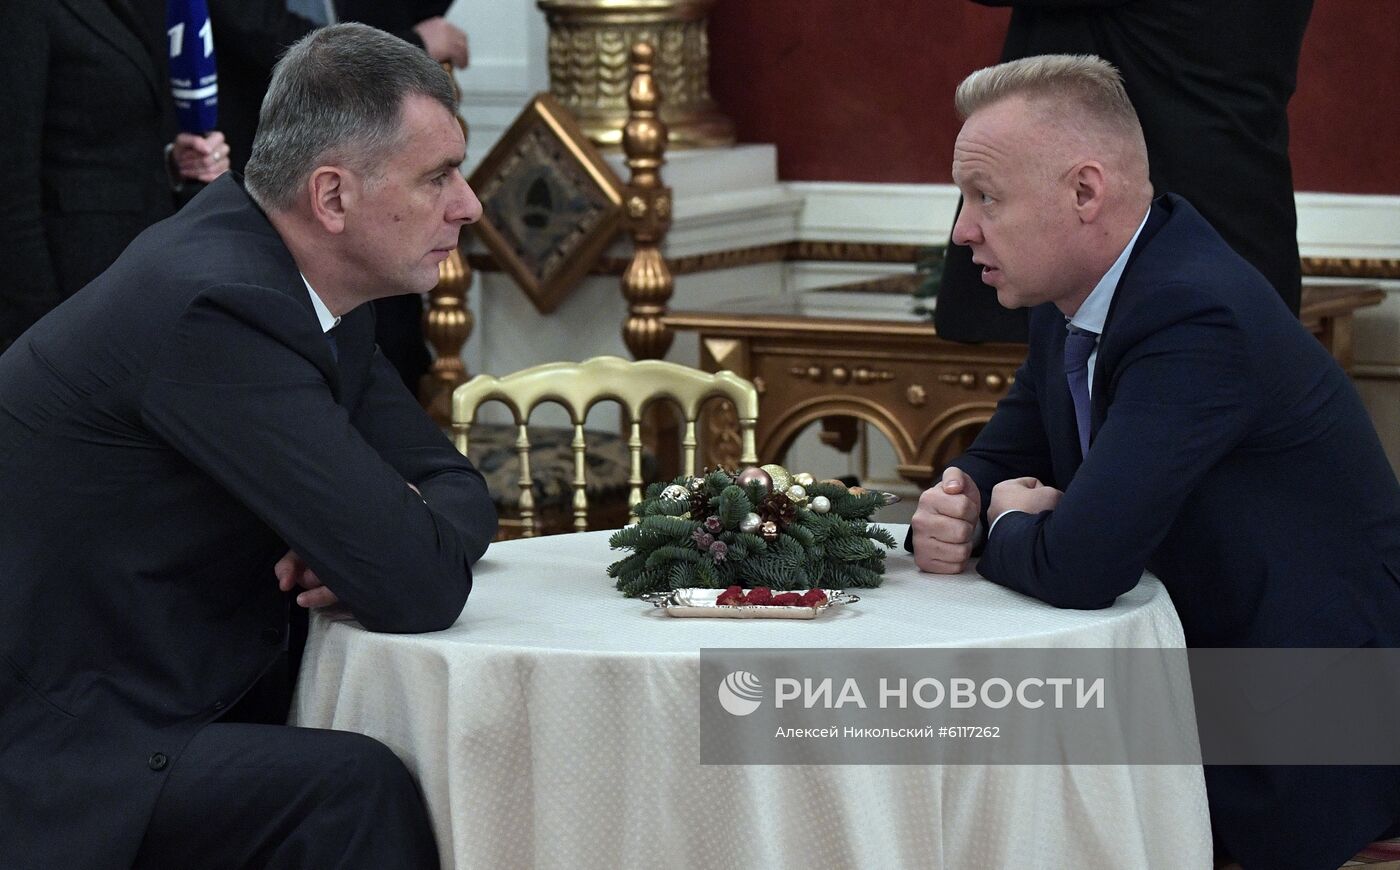 Президент РФ В. Путин провел встречу с представителями российского бизнеса